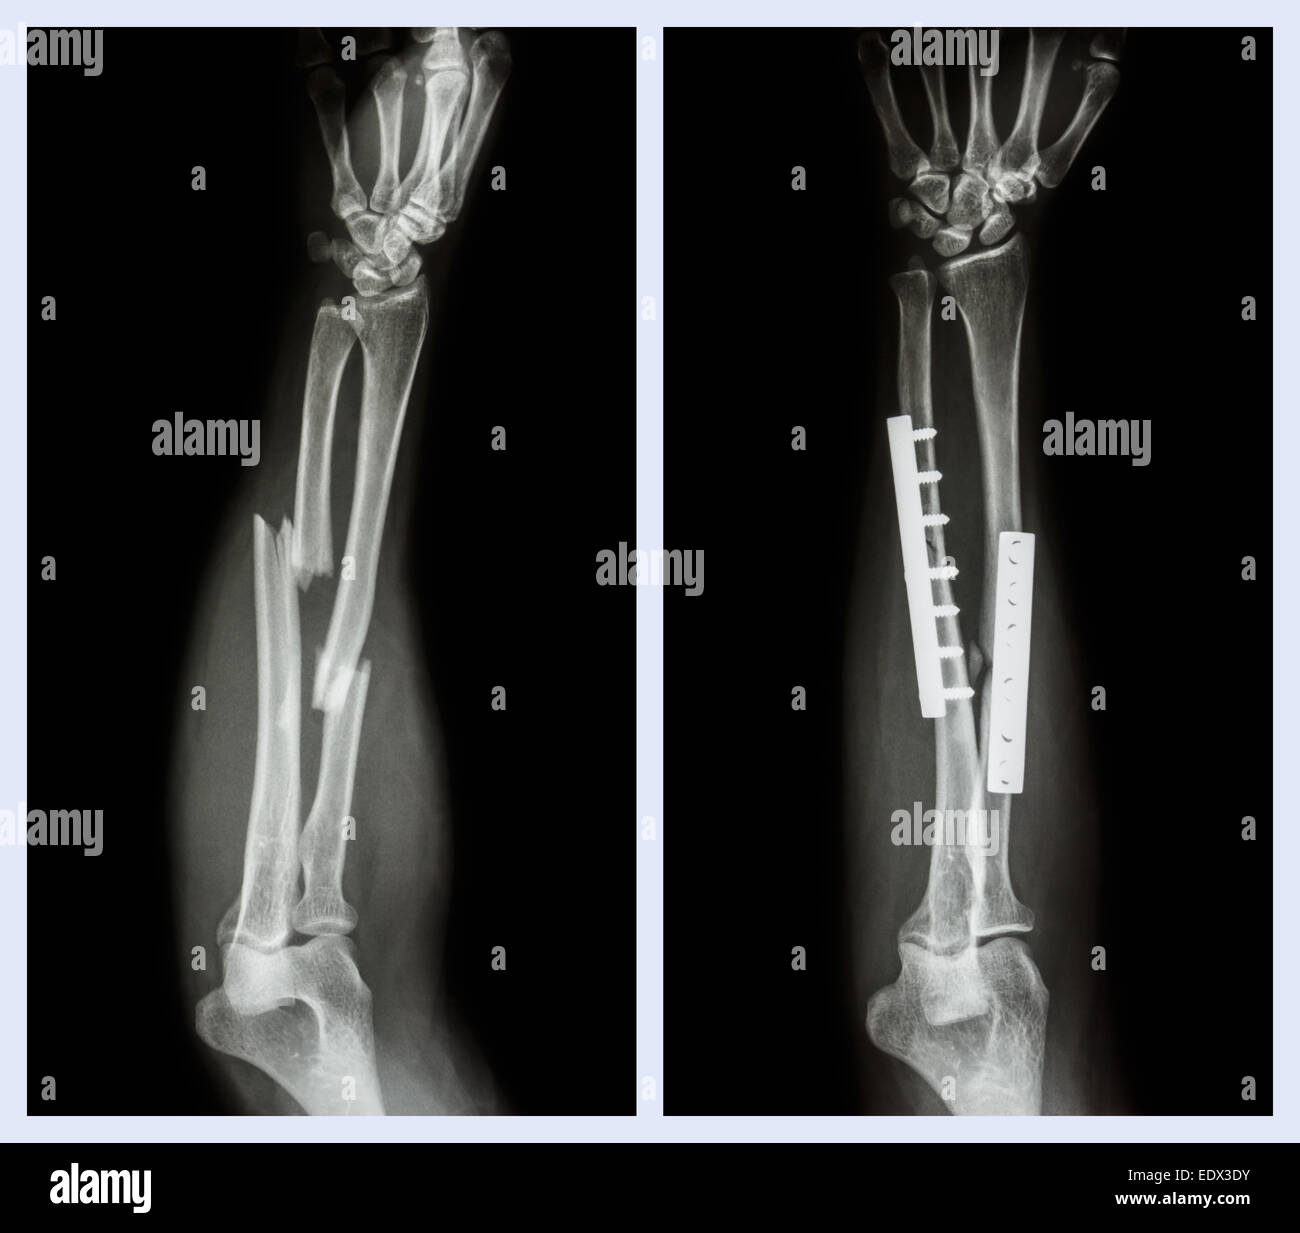 Fraktur beider Knochen des Unterarms. Es wurde operiert und interne fixiert mit Platte und Schraube (vor Inbetriebnahme, nach Operation) Stockfoto